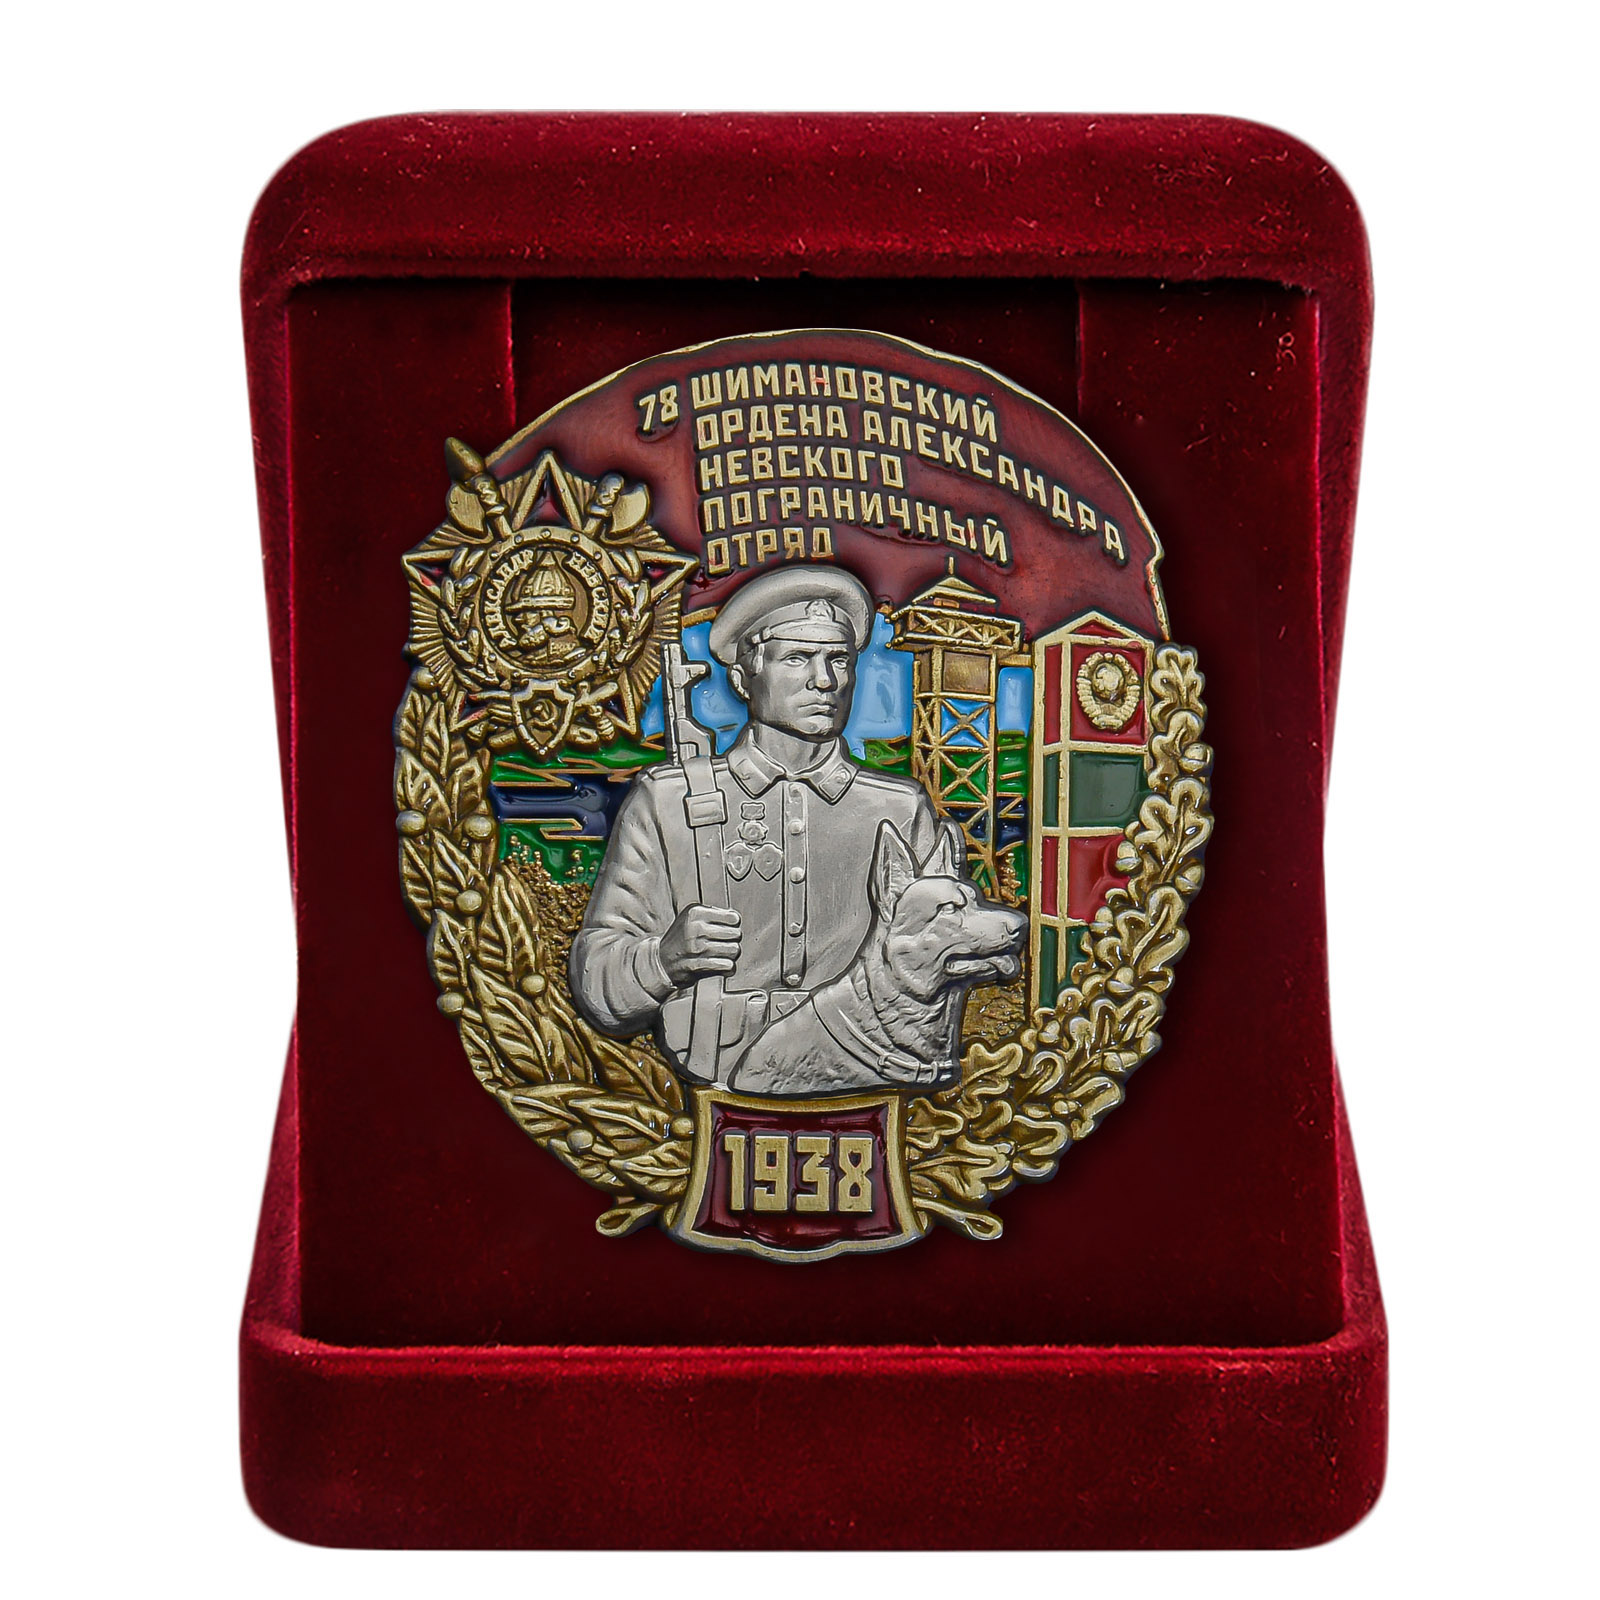 Купить знак 78 Шимановский ордена Александра Невского Пограничный отряд онлайн